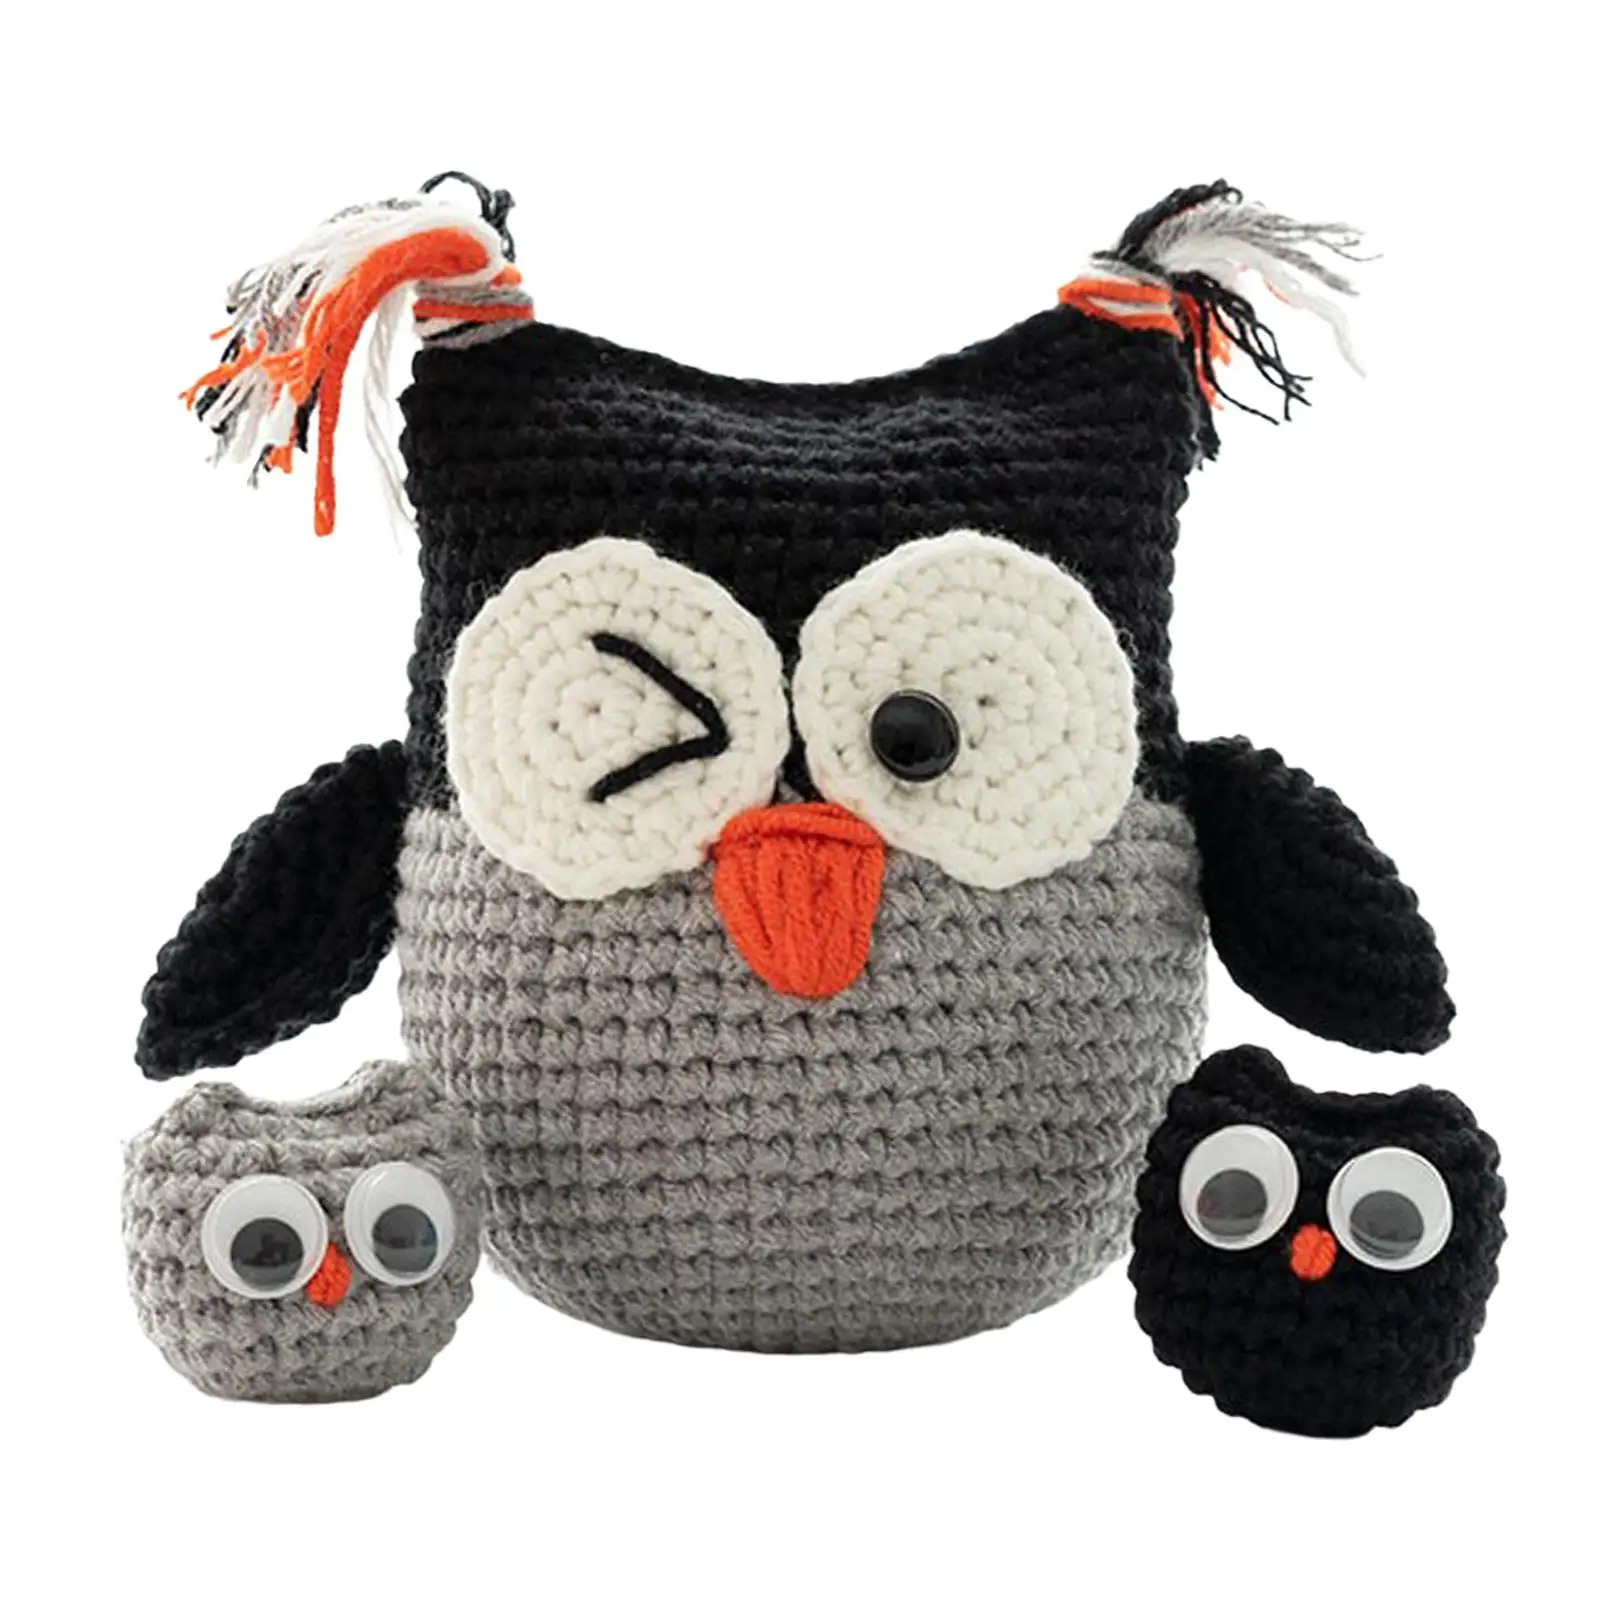 Handmade Crochet Kit Crocheting Knitting Toy Needlework Sewing Craft Beginner Crochet Kit for Perfect Gift